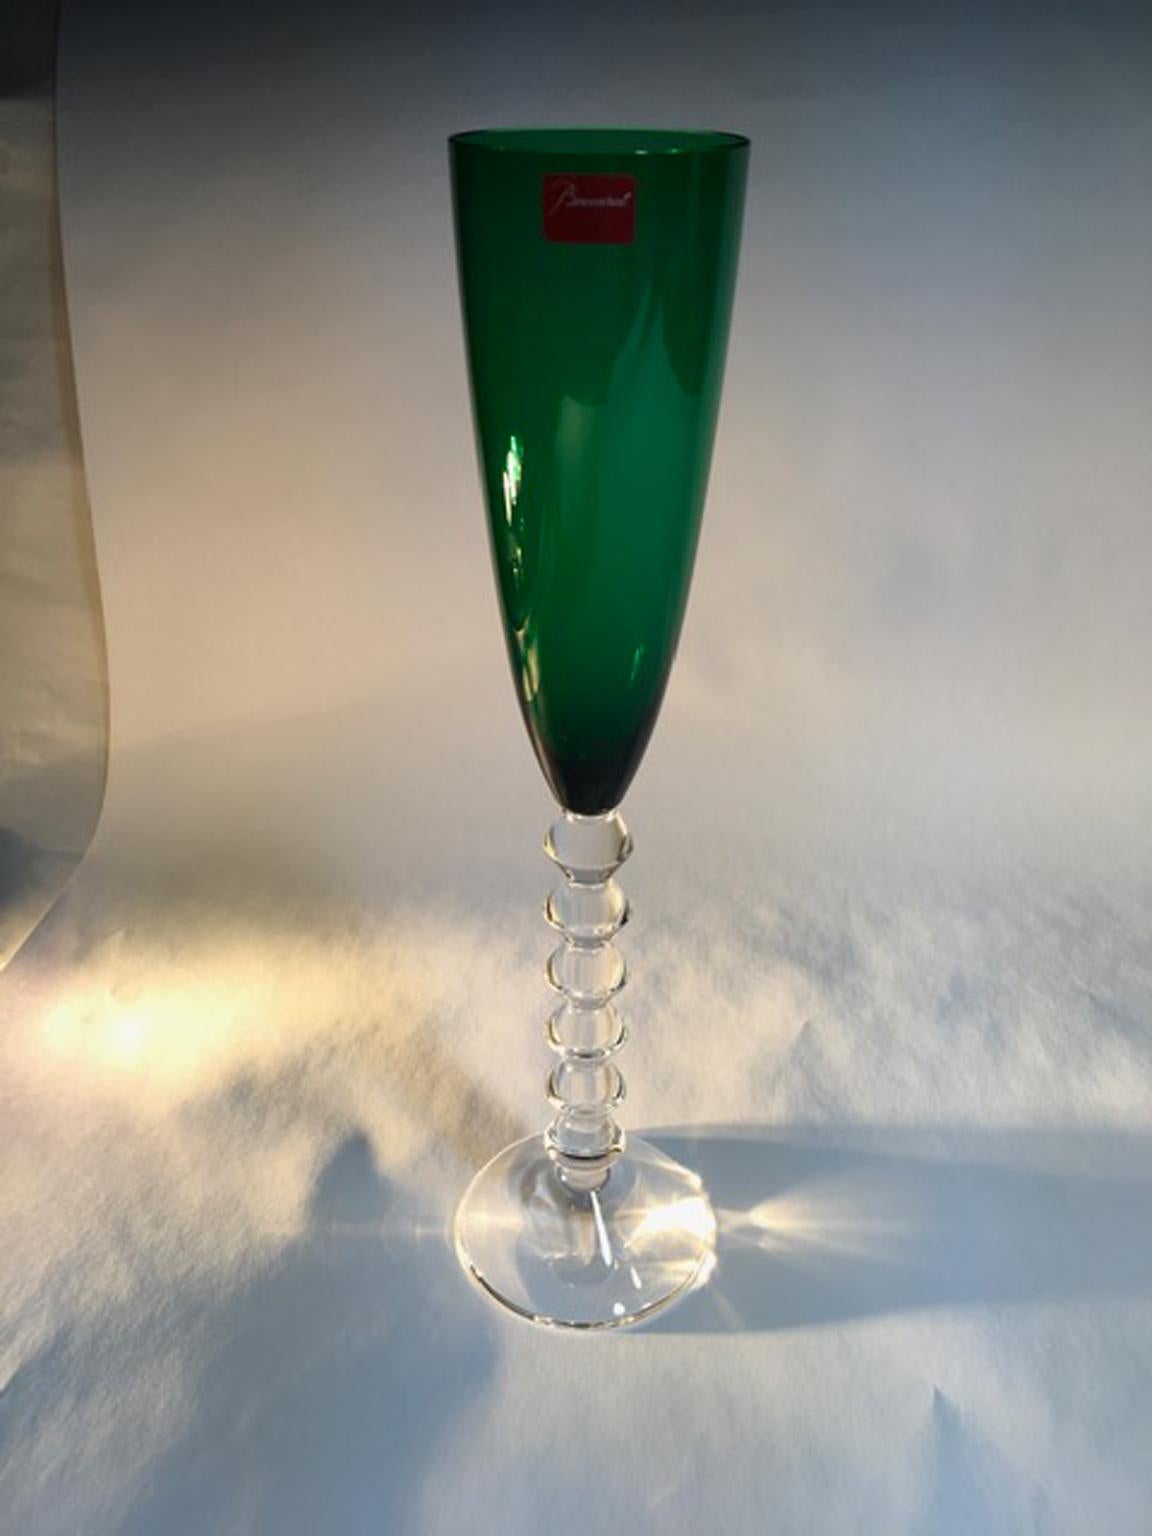 Baccarat Green Crystal Goblet, France 2